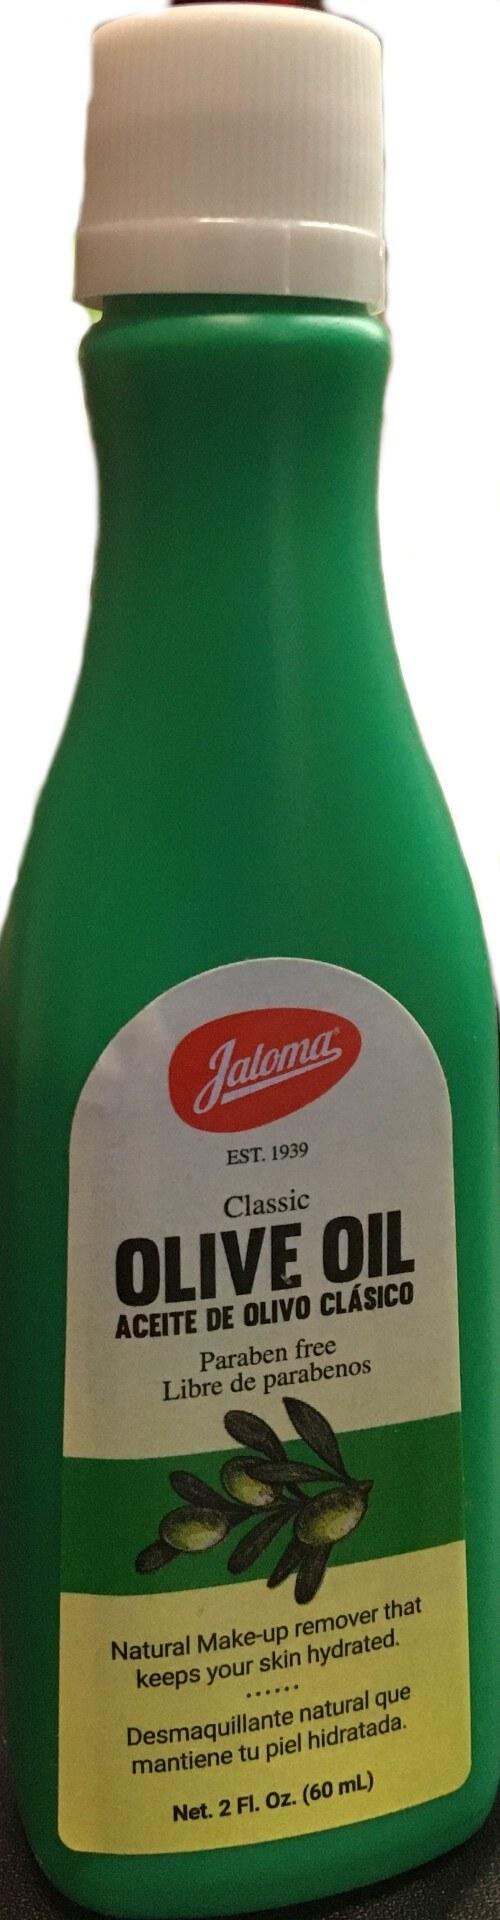 Jaloma - Olive Oil Natural Make-up remover 2oz